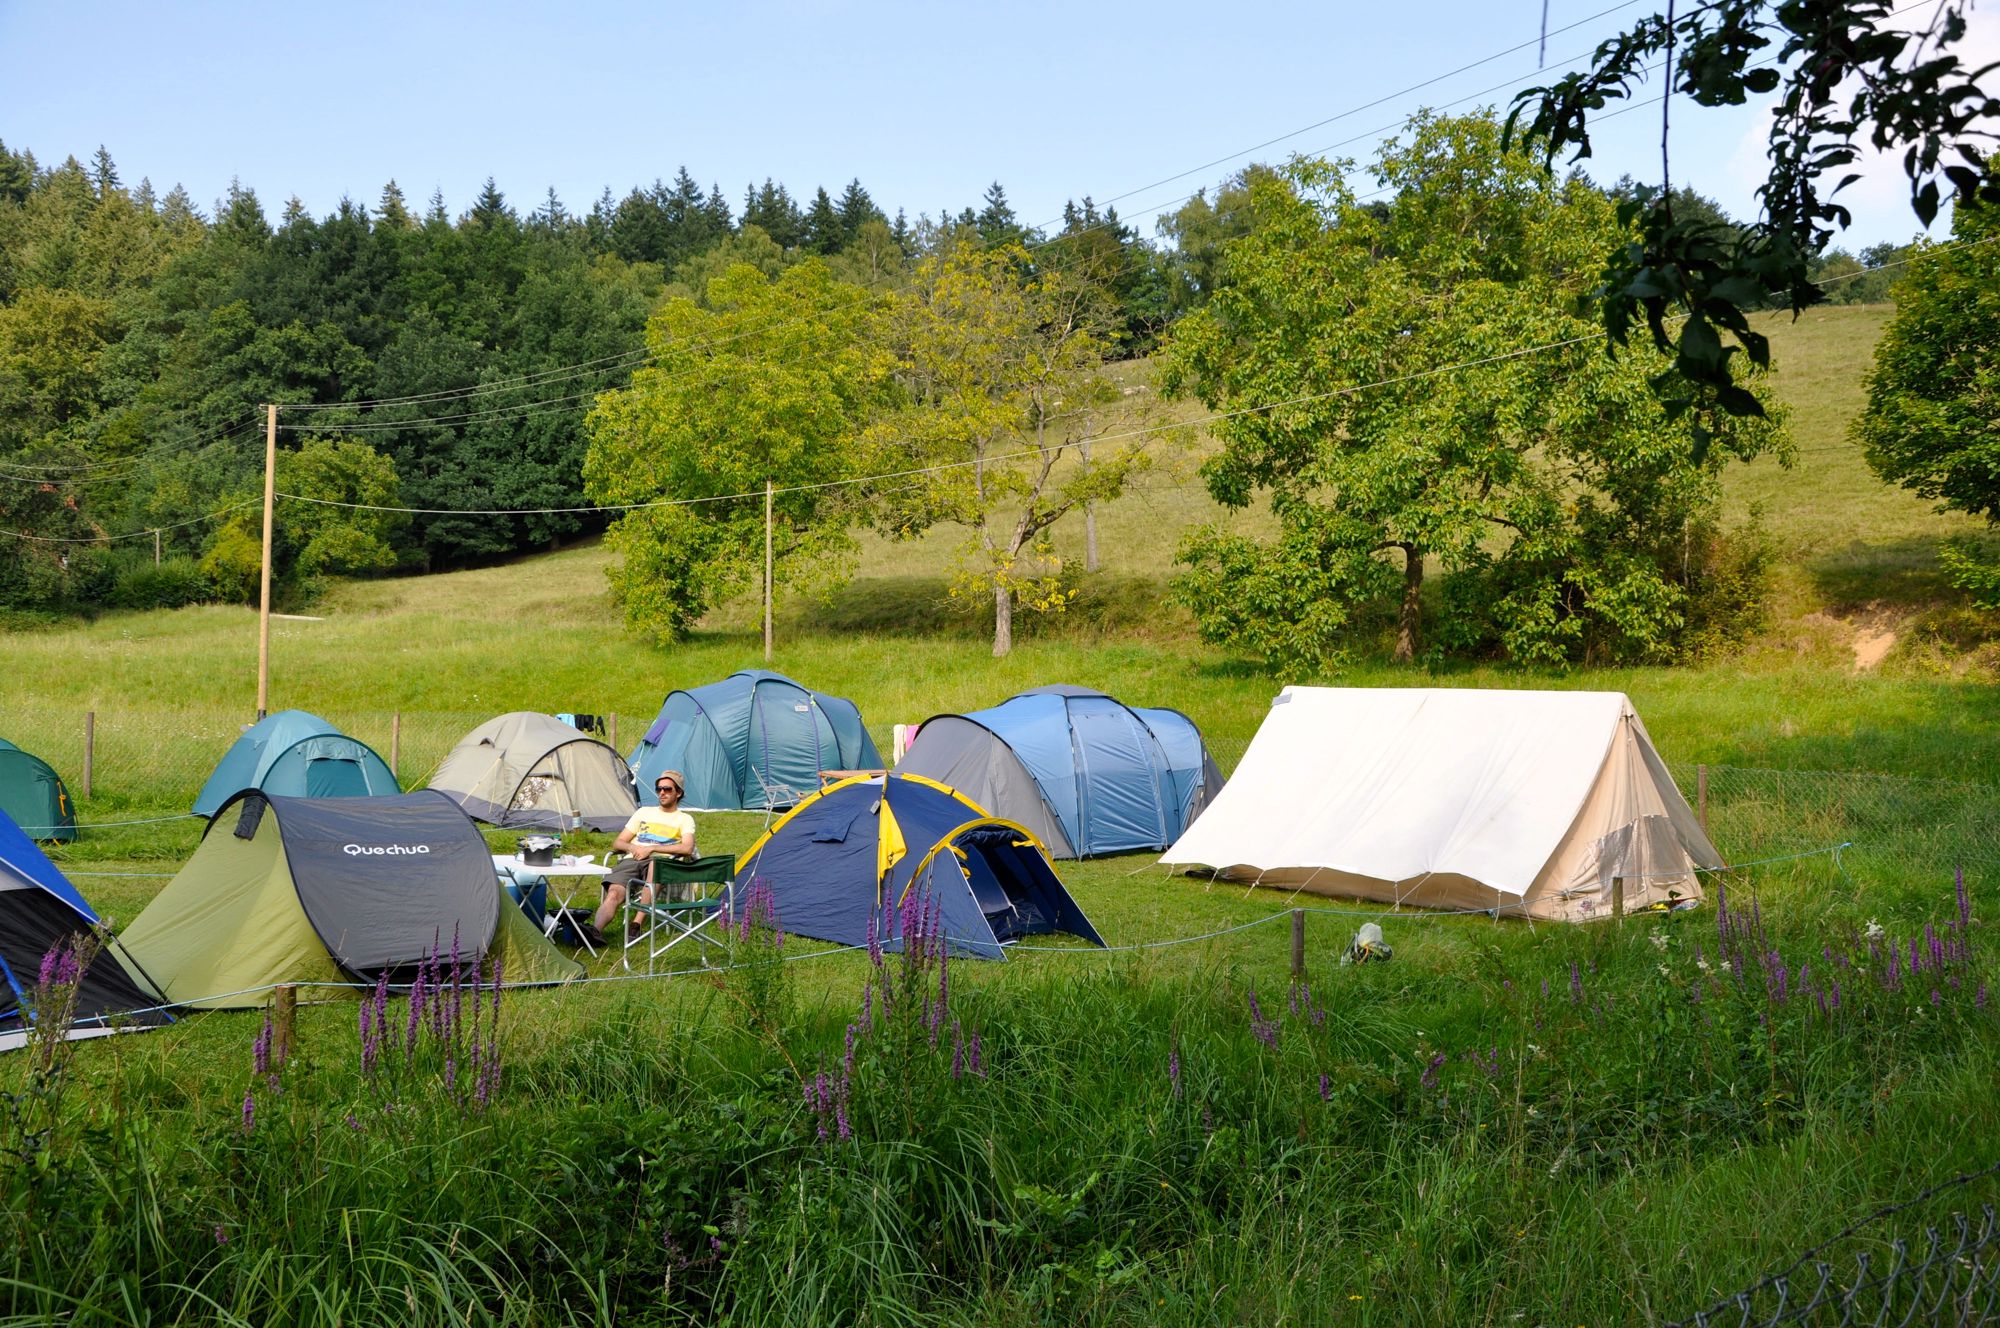 Camping site. Германия палаточный городок. Стоянка автокемпинг. Nature Camping палатка 4 местная. Палаточные стоянки в Башкирии.